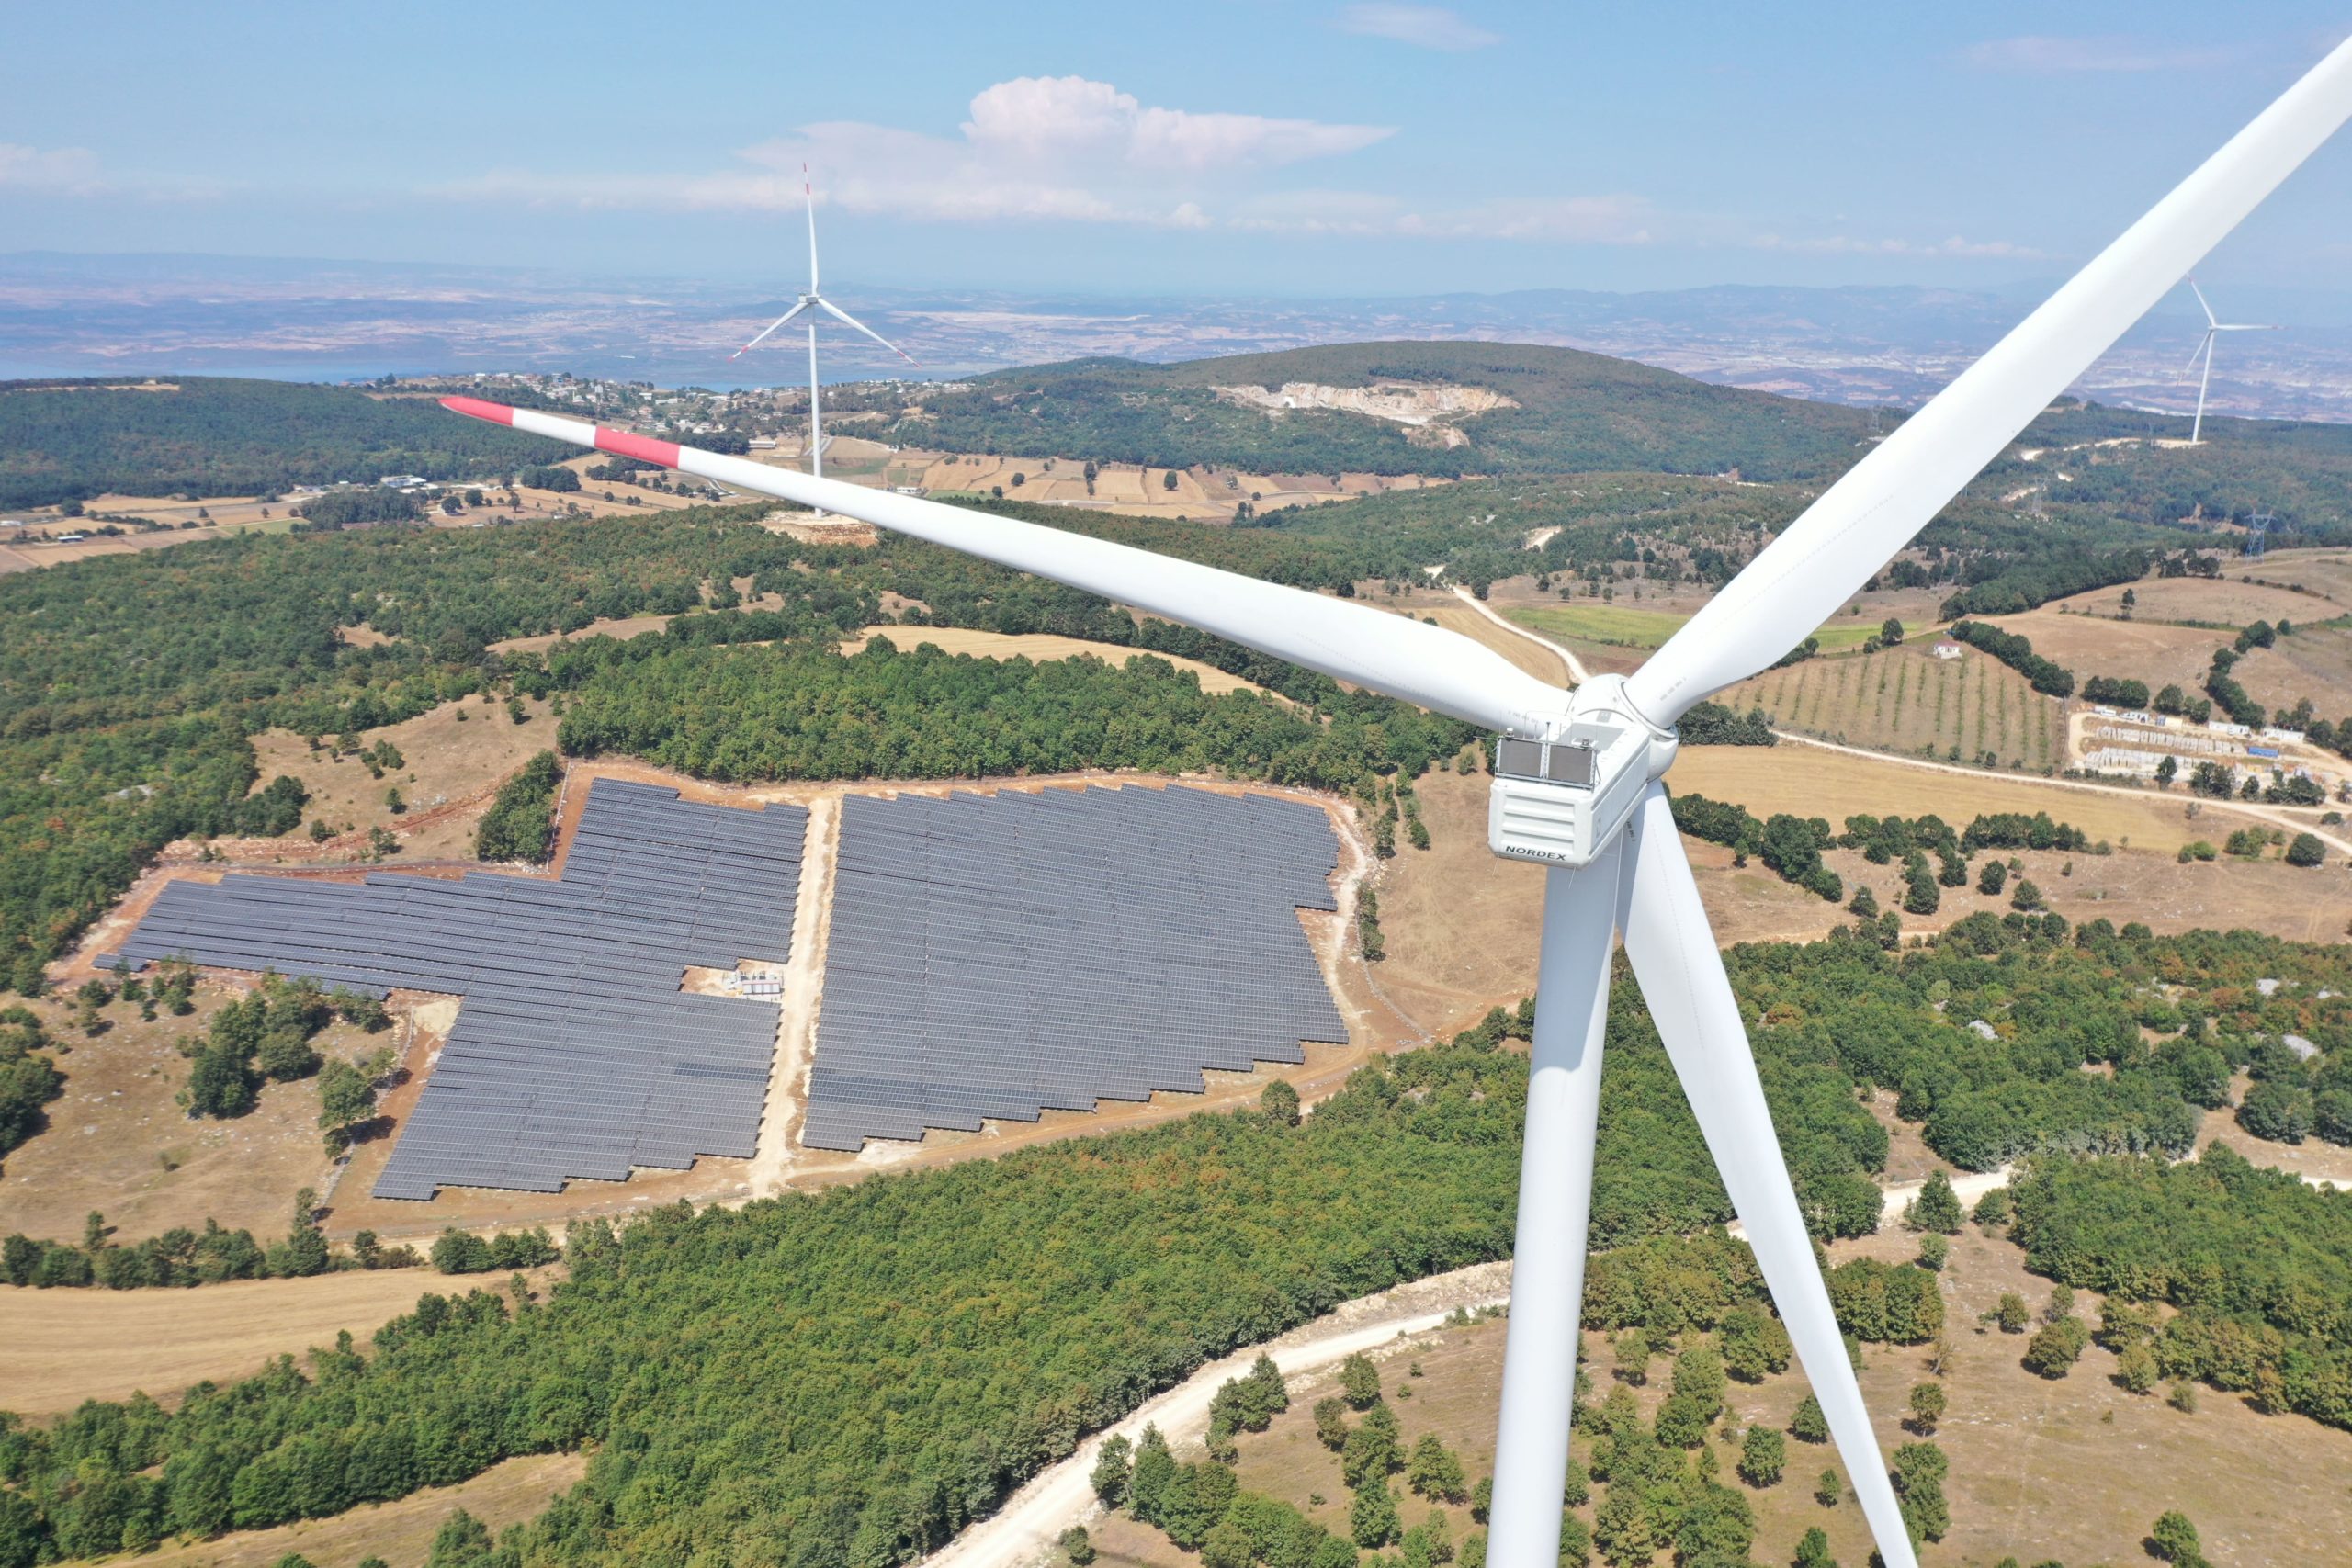 Galata Wind, Proparco’dan 25 milyon dolar yeşil kredi aldı